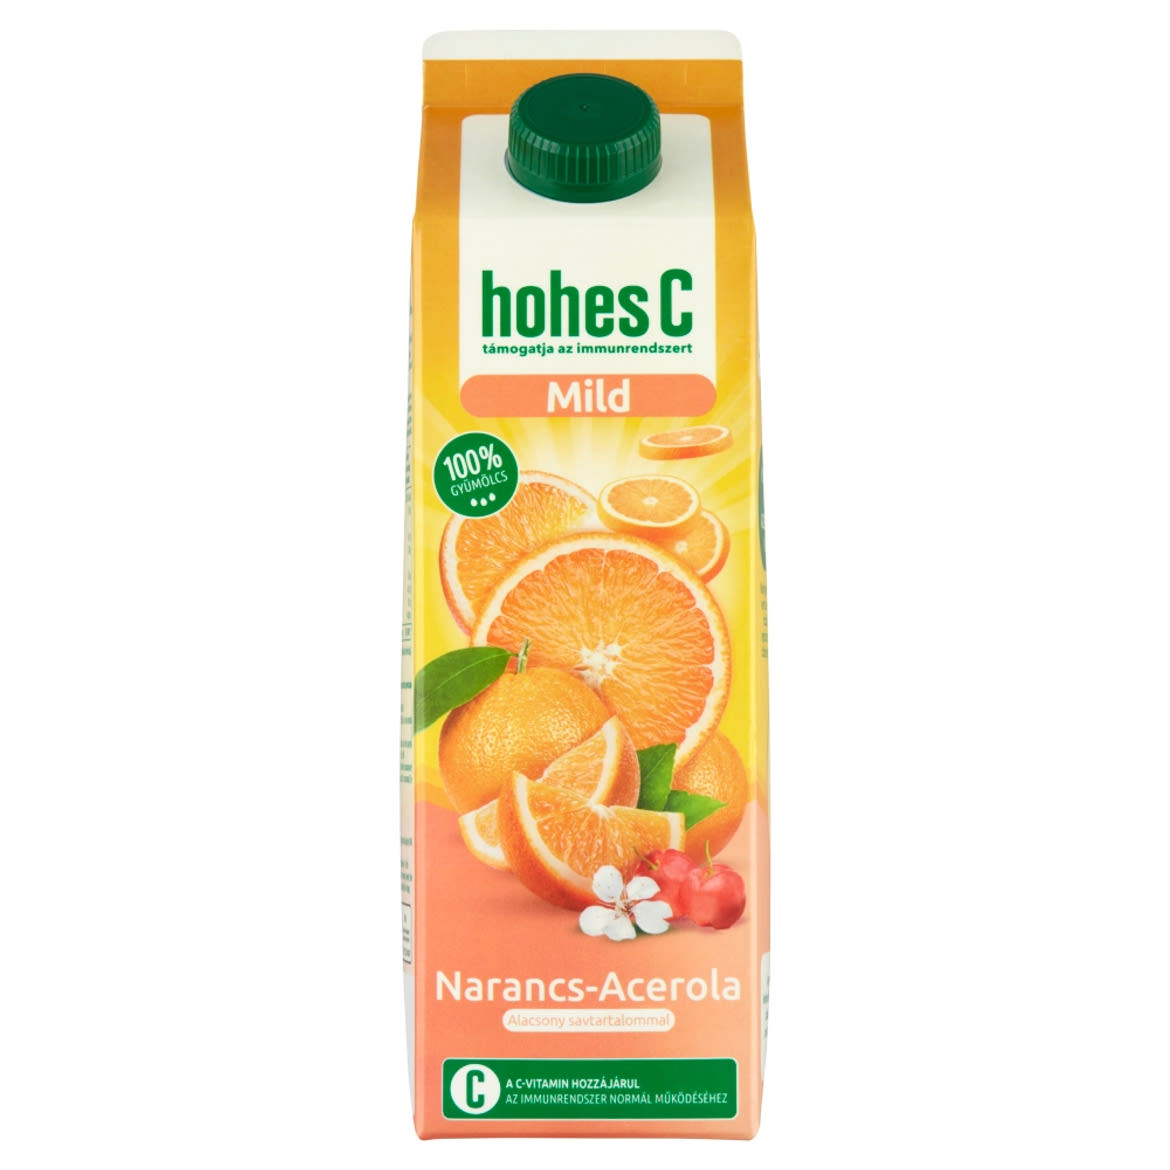 Hohes C Mild 100% narancs-acerola gyümölcslé